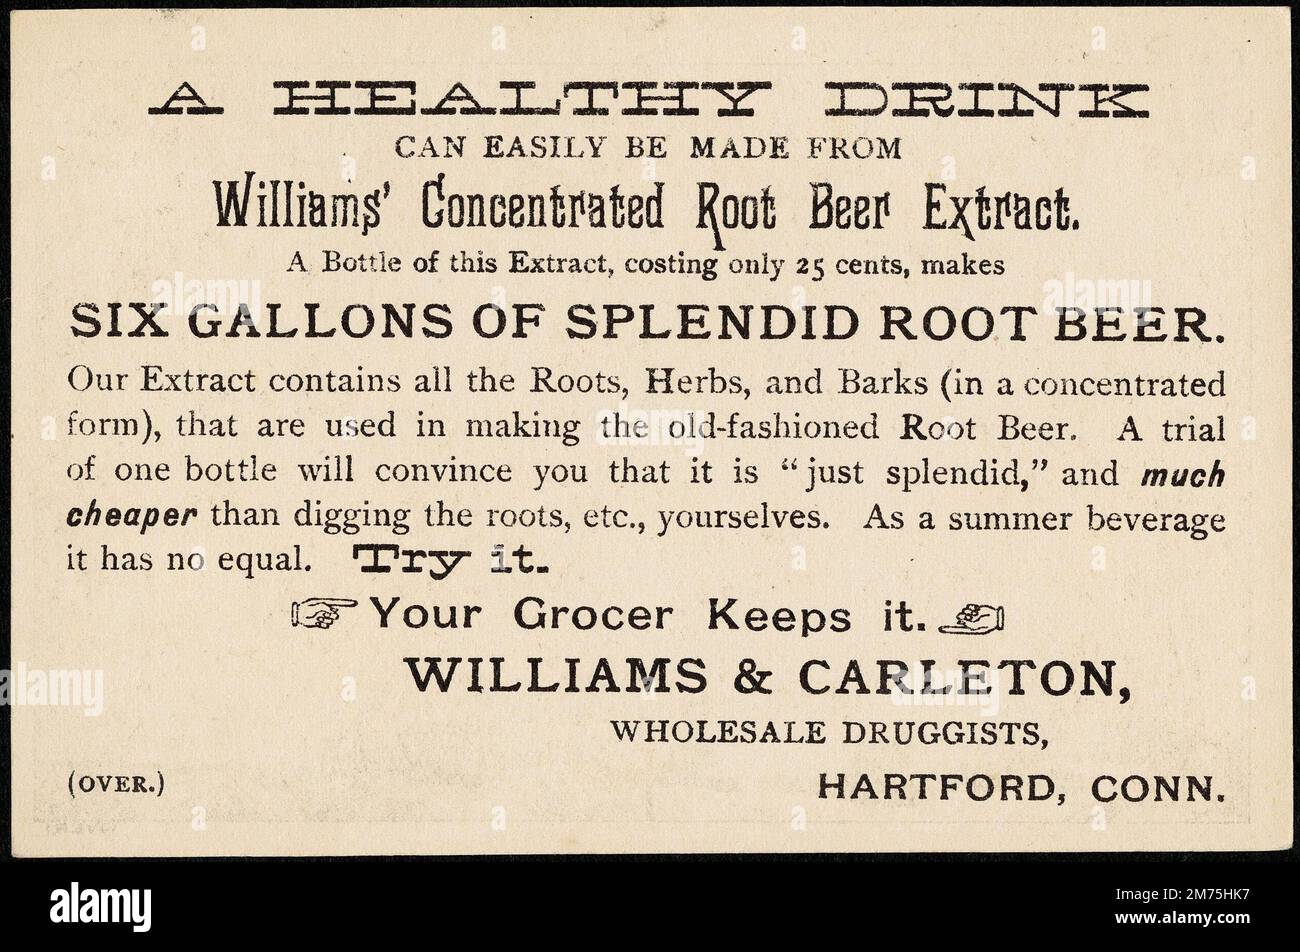 Publicité pour l'extrait concentré de bière de racine de Williams, vers 1900 Banque D'Images